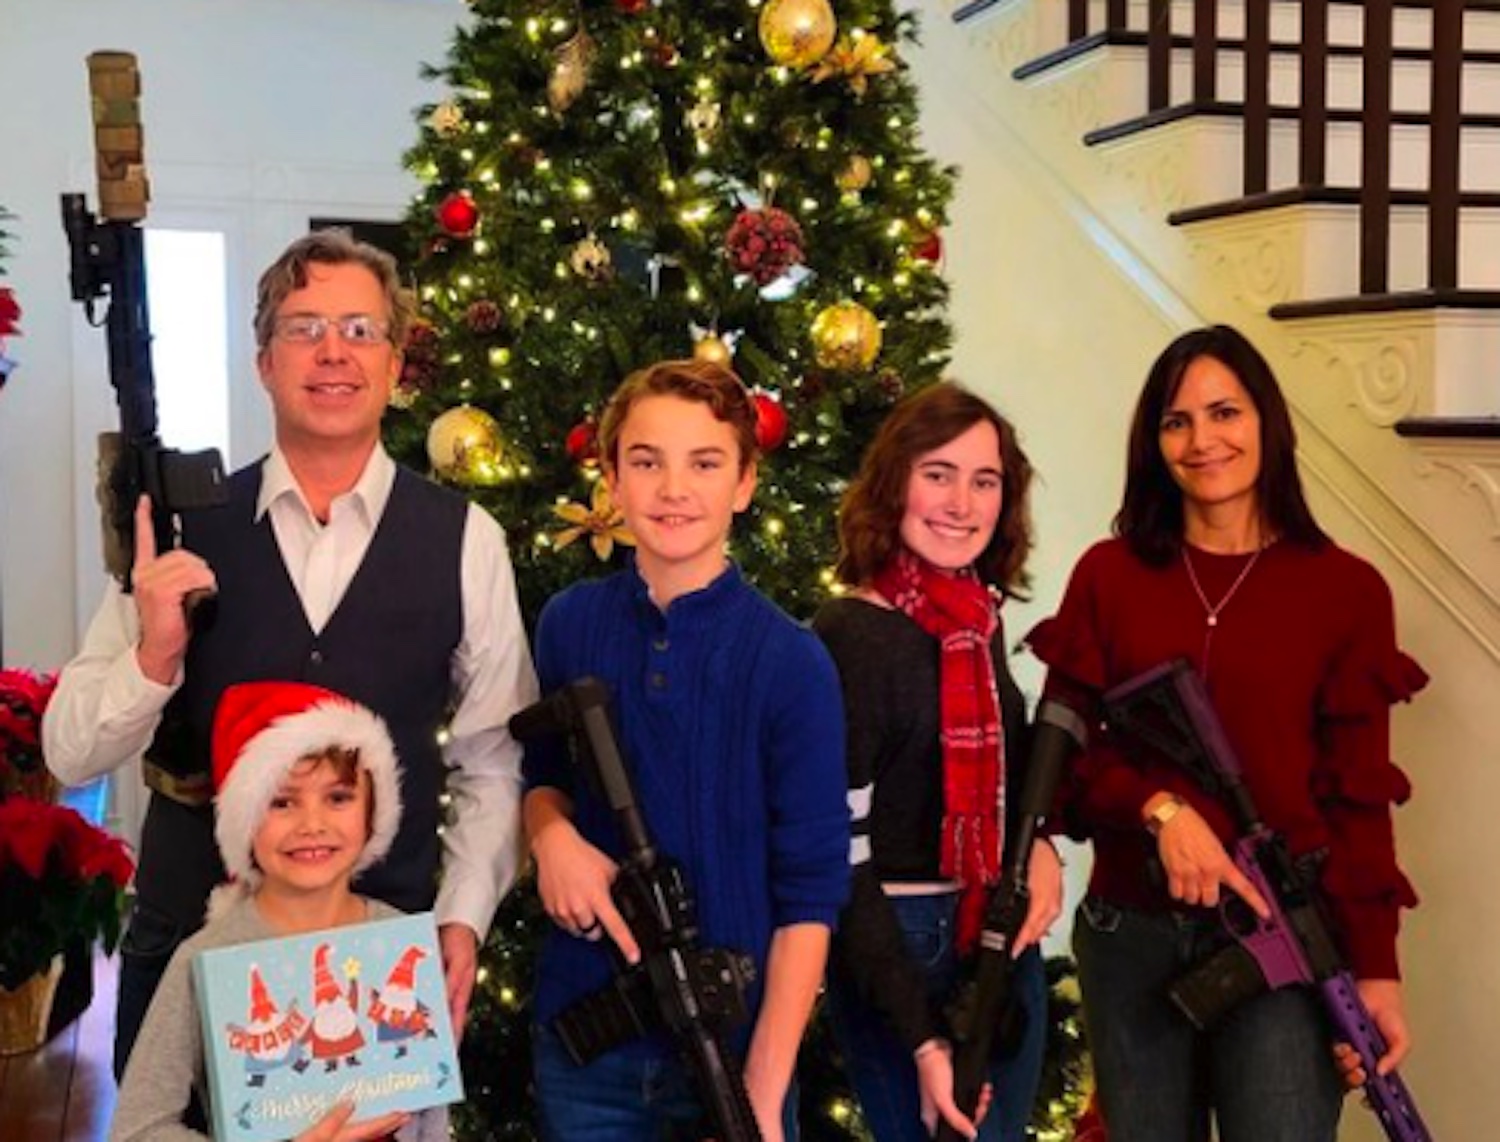 La foto di famiglia del deputato di Nashville con le armi davanti all’albero di Natale, le accuse sui social: «Così avete reso possibile la strage»